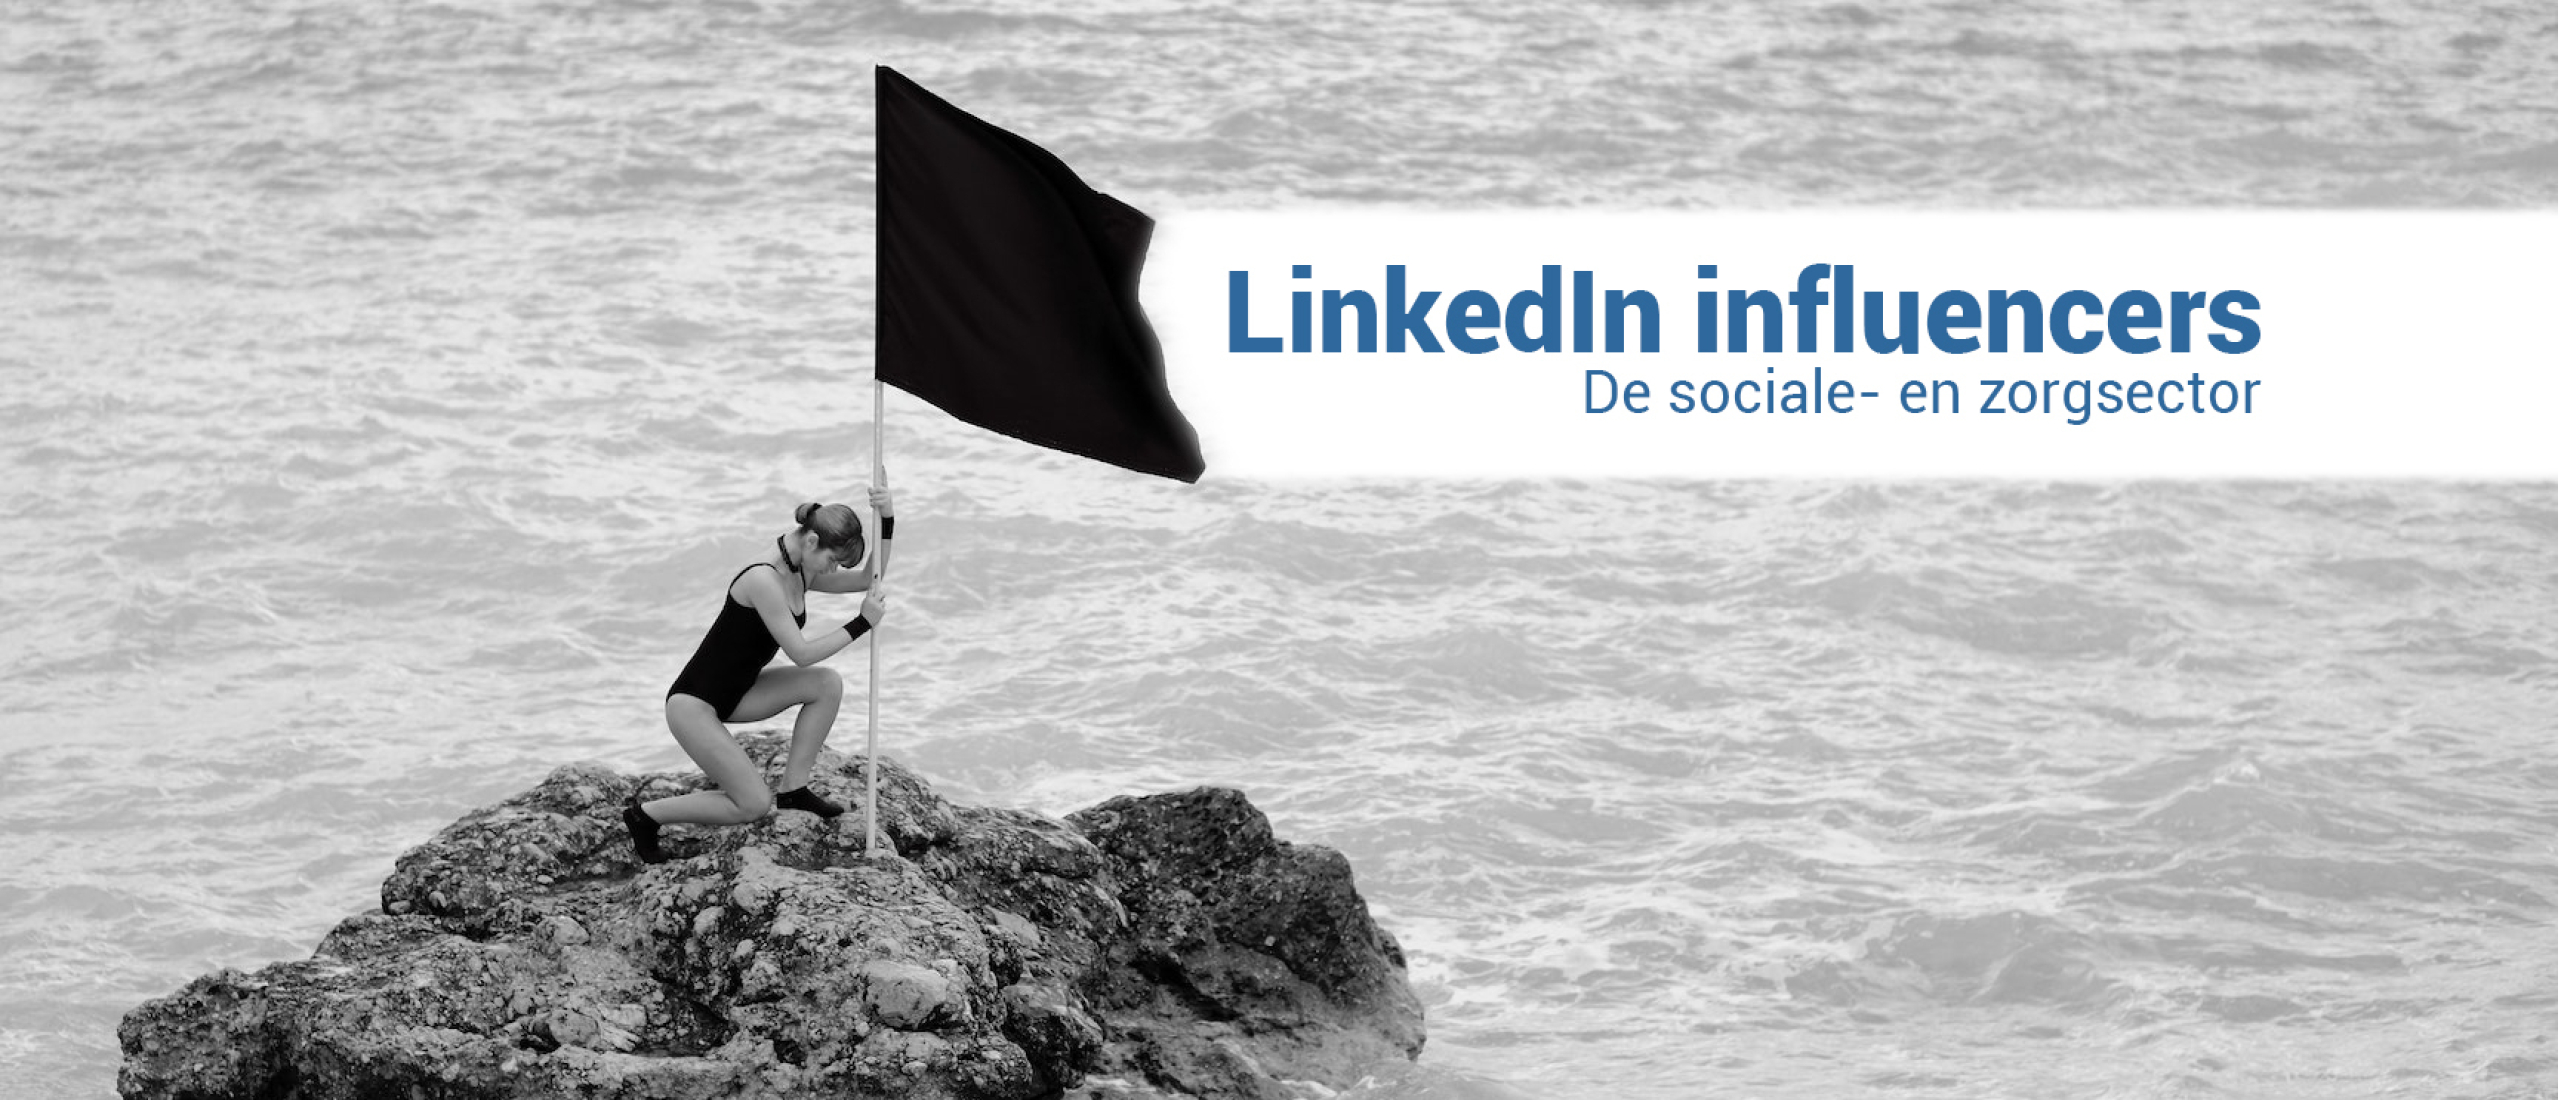 LinkedIn Influencers in de sociale- en zorgsector